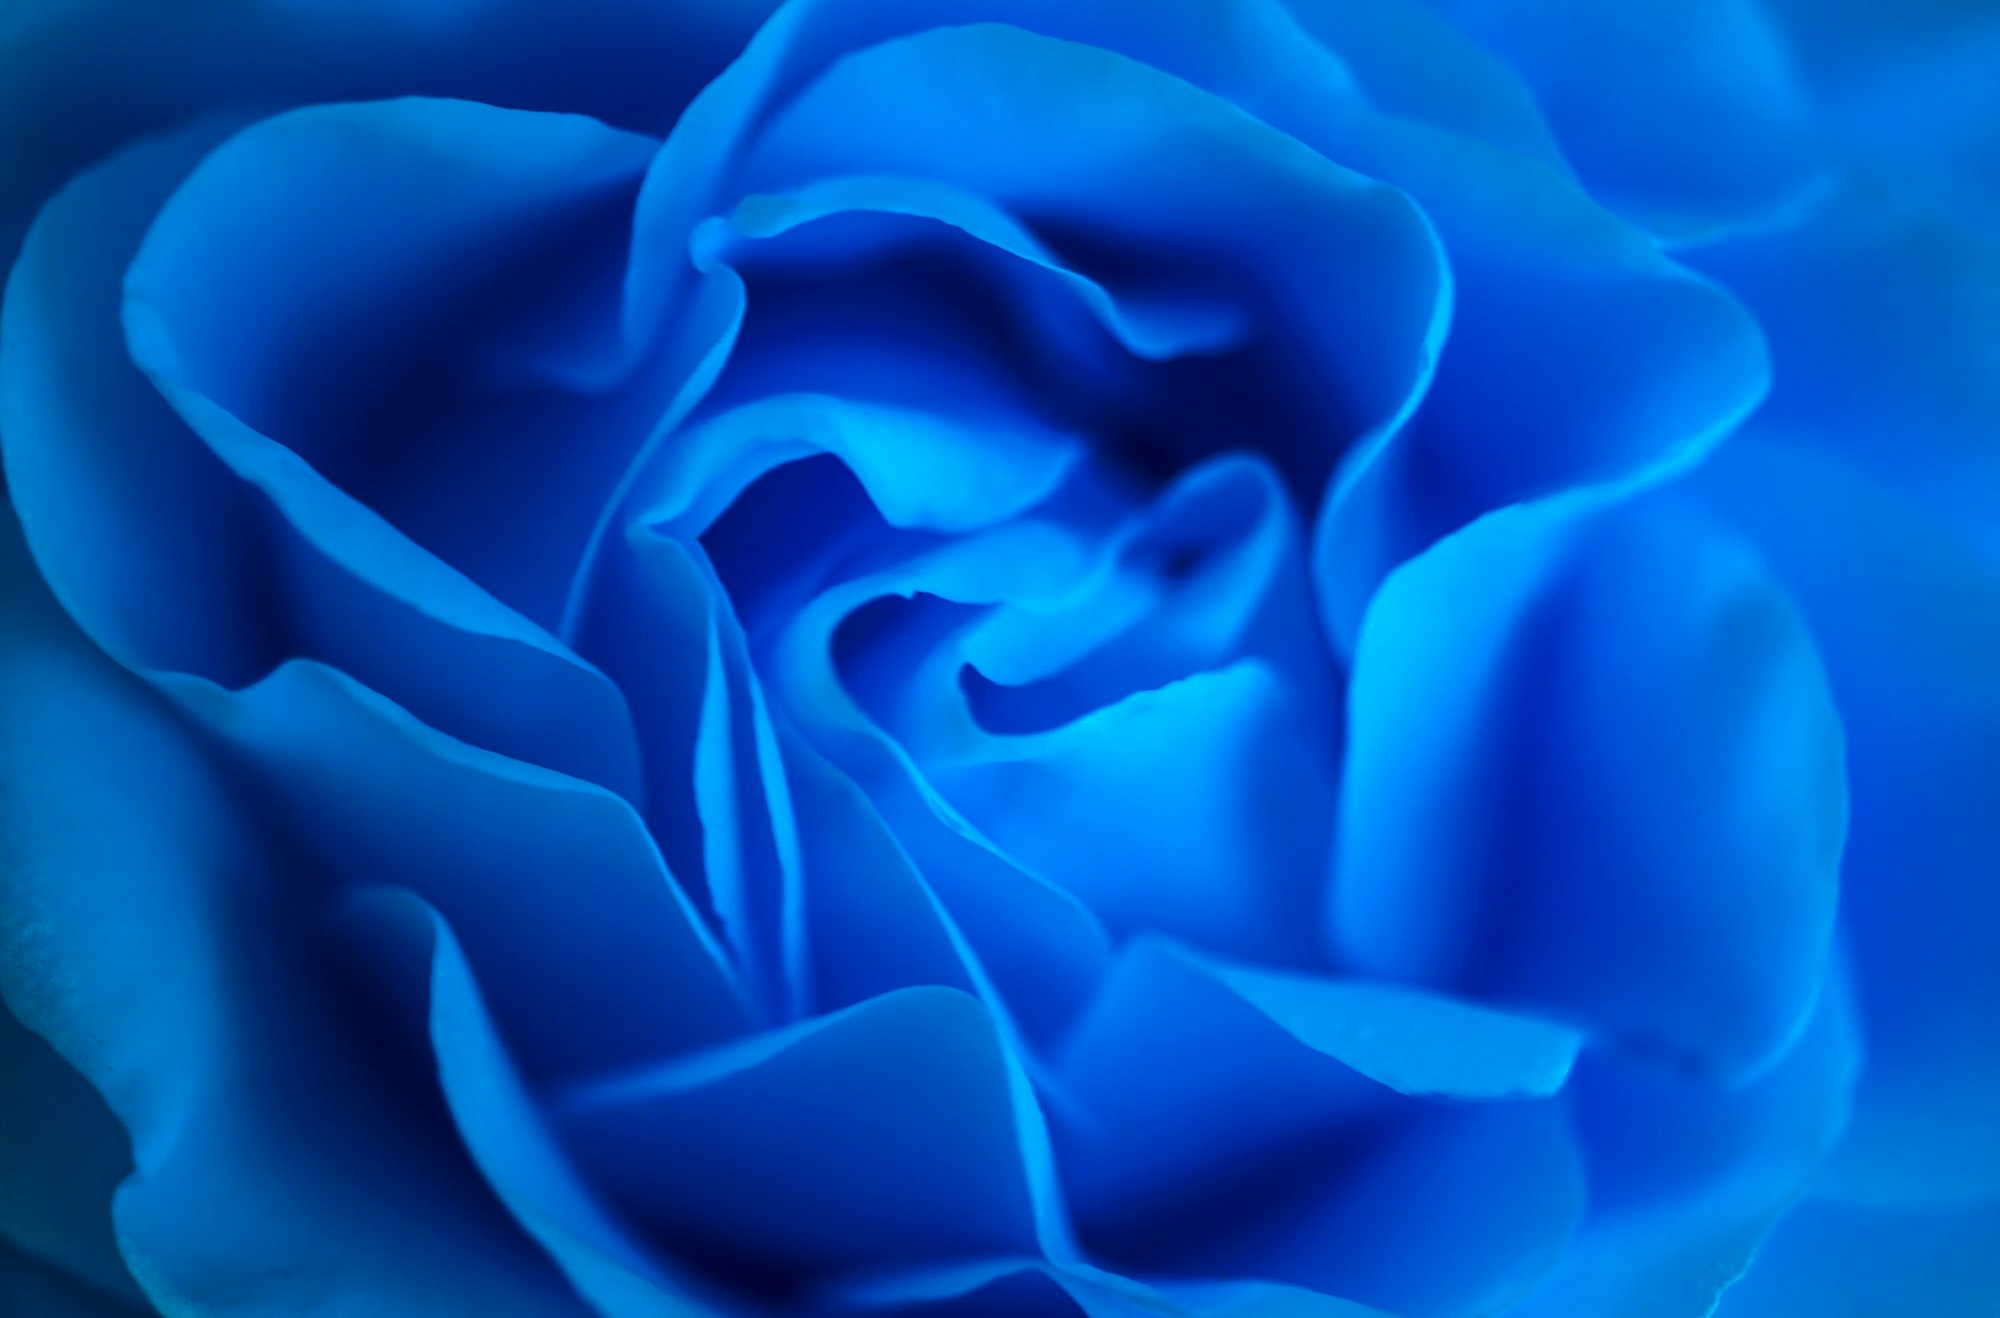 A chi si possono regalare le rose blu stabilizzate